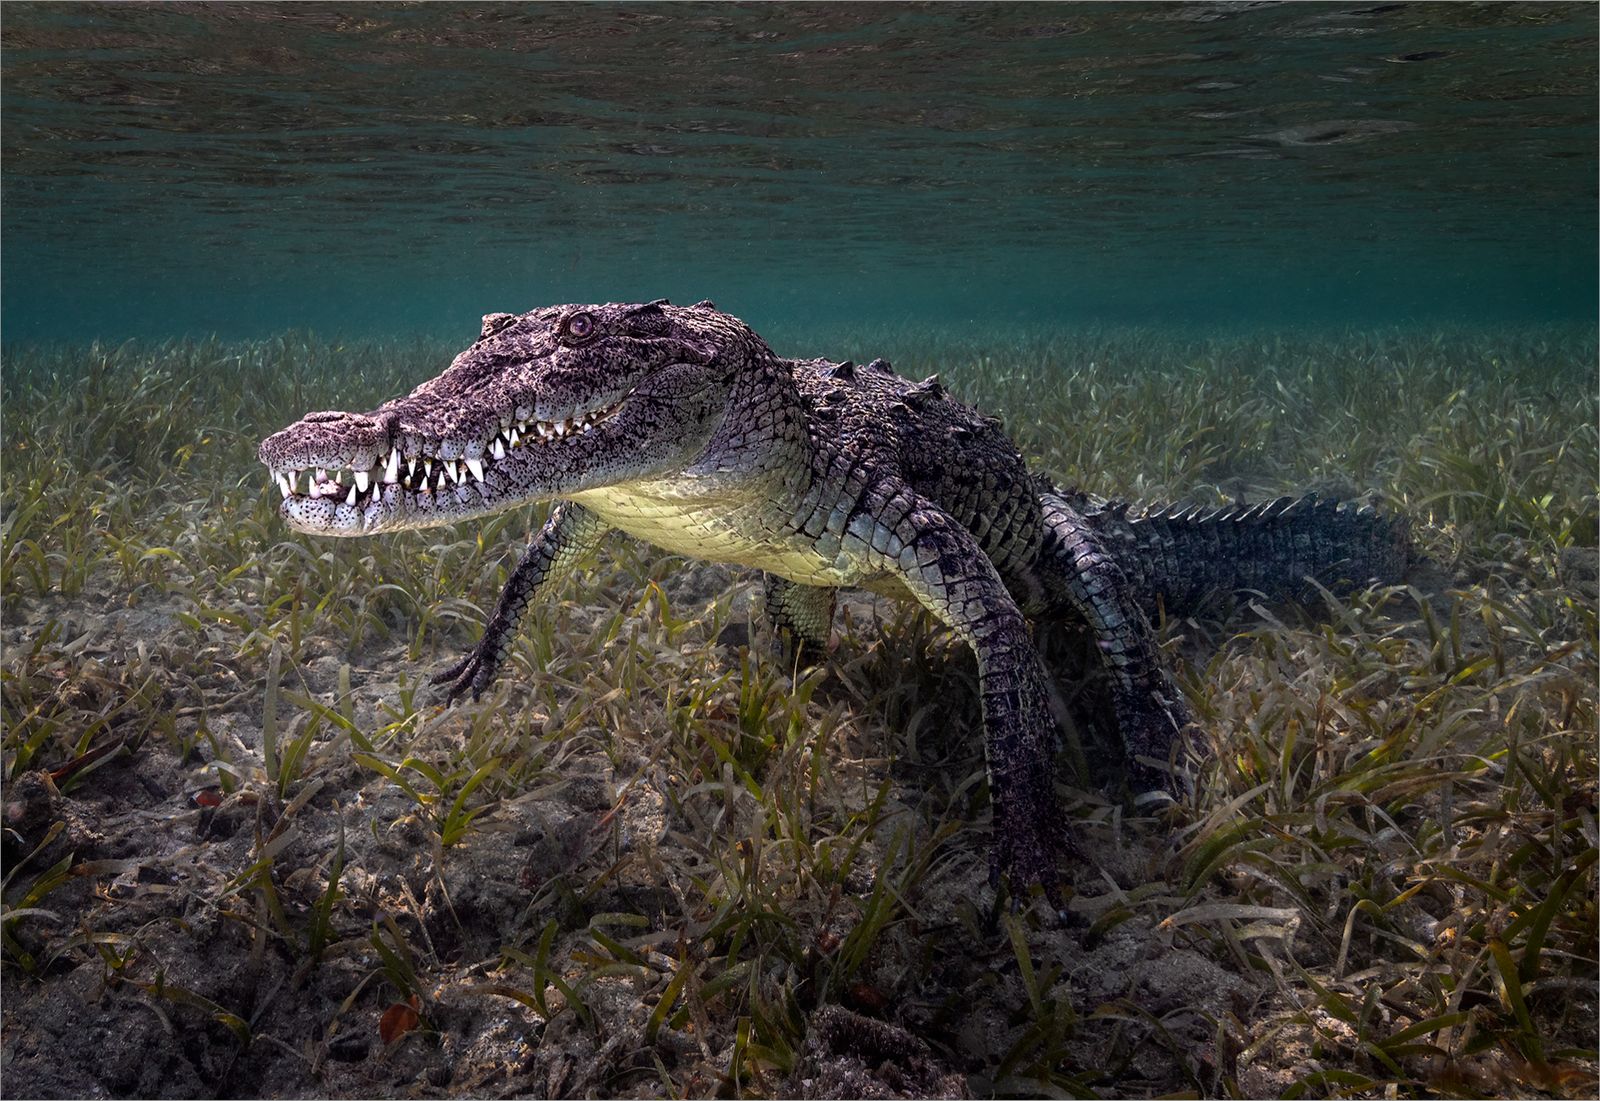 Saltwater Crocodile, Jardines de la Reina, Cuba